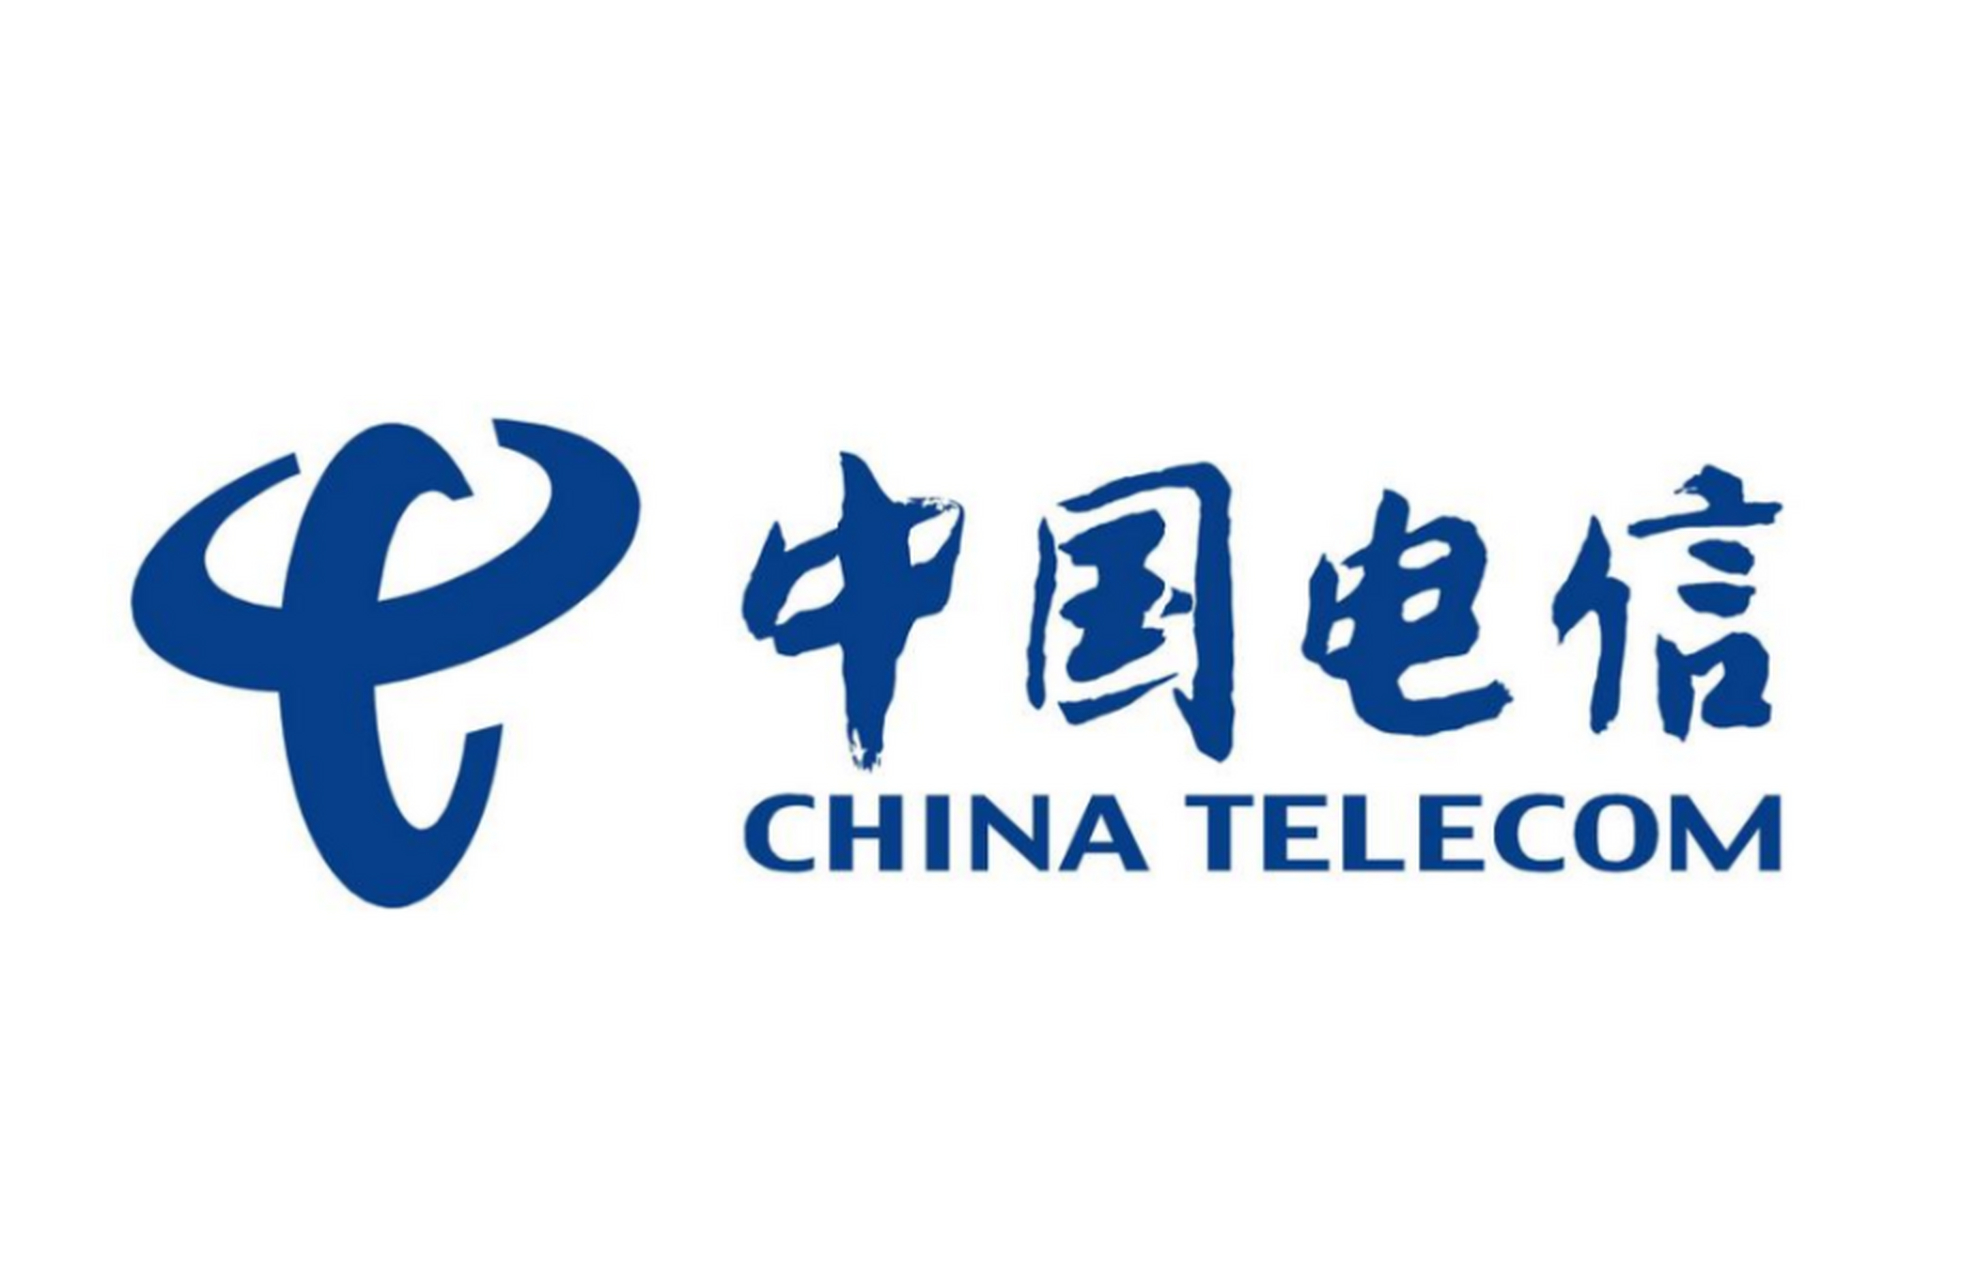 中国电信网络升级,不支持volte高清语音的手机连2g电话,短信都用不了